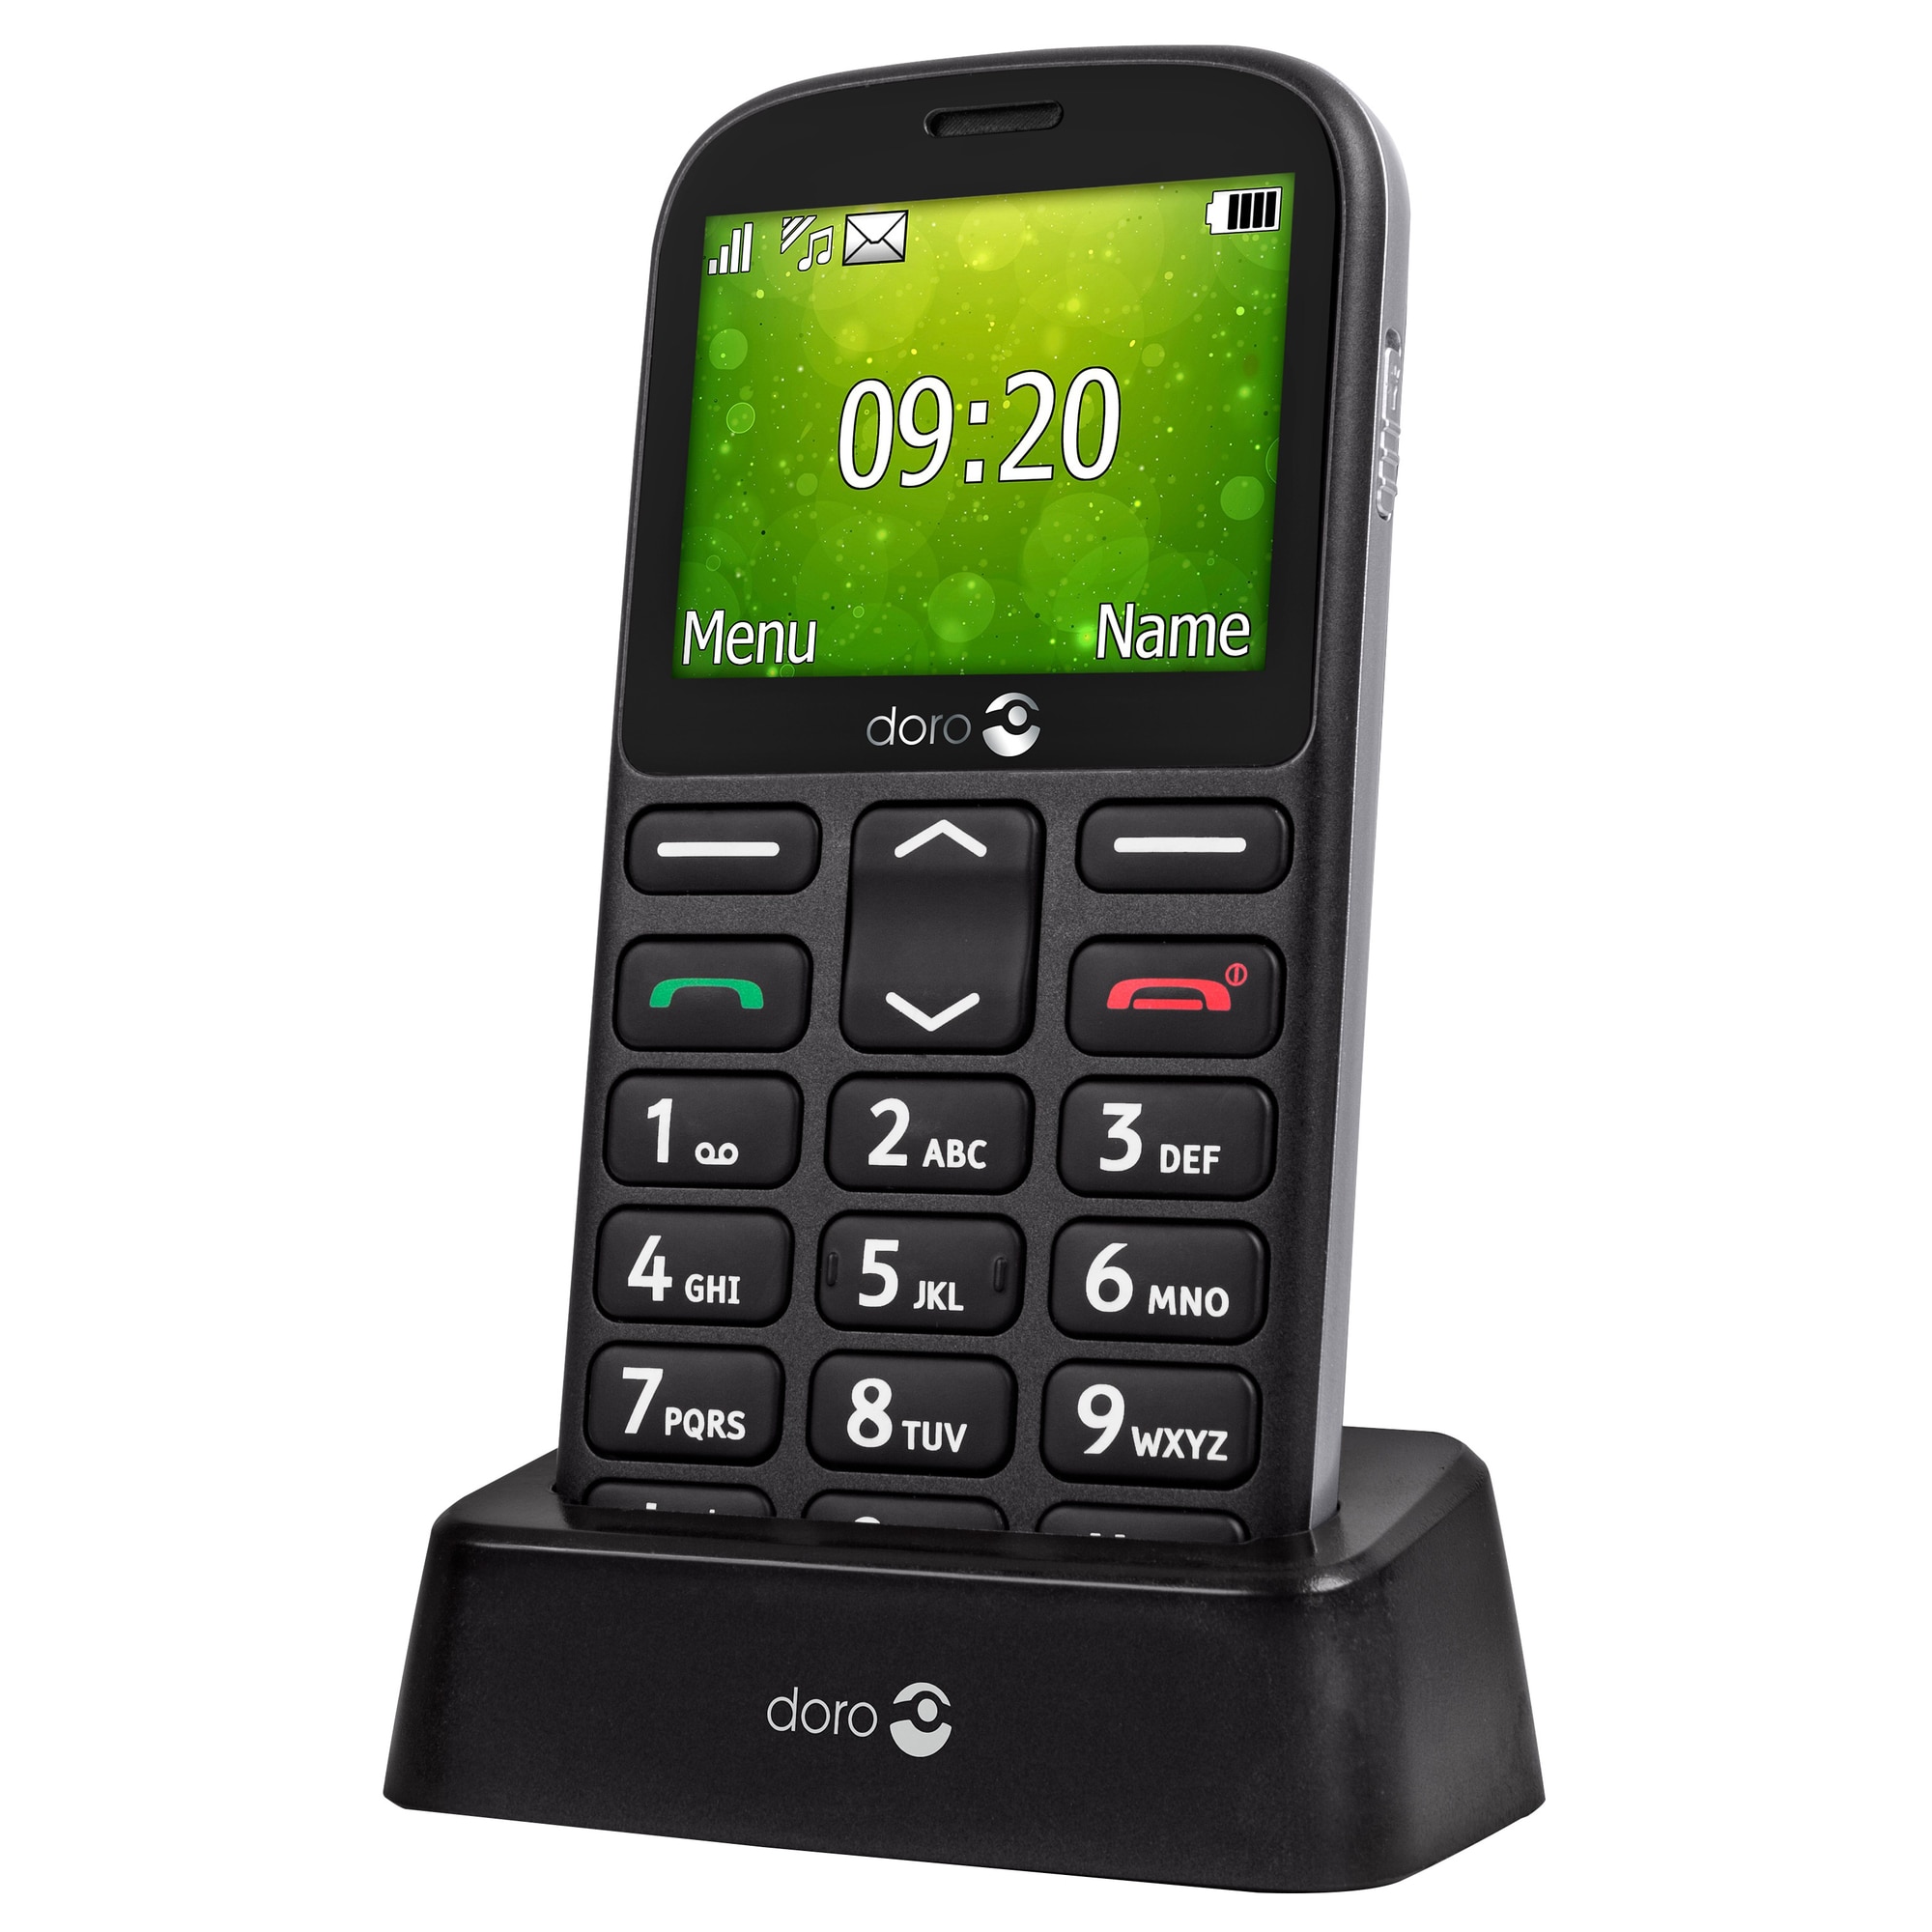 Doro 1362 mobiltelefon senior (svart) - Mobiltelefoner - Elgiganten